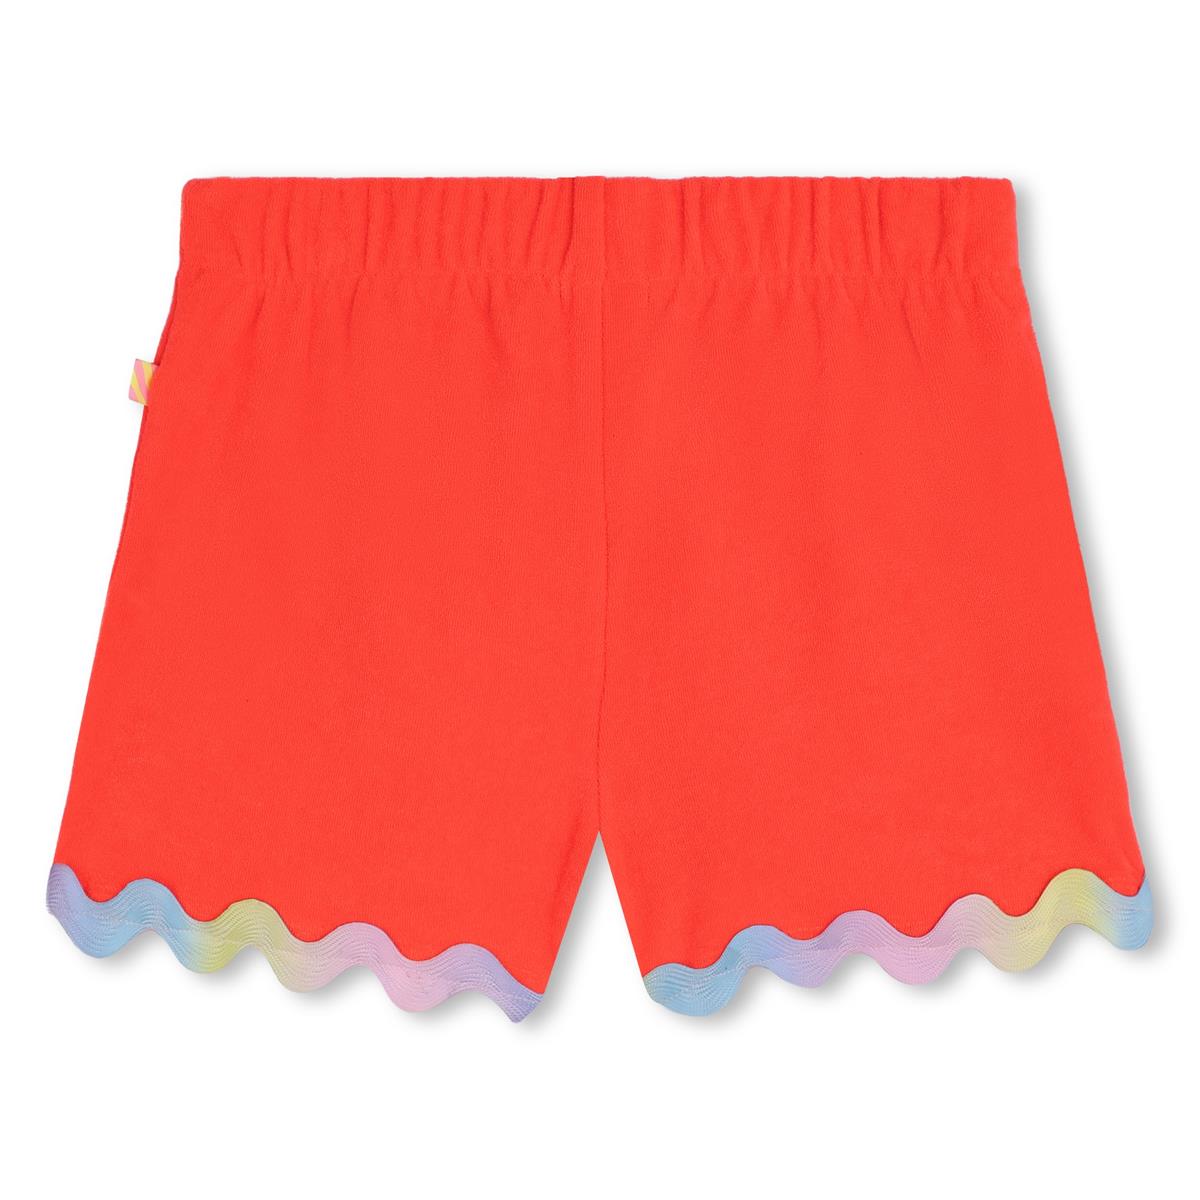 Girls Orange Shorts